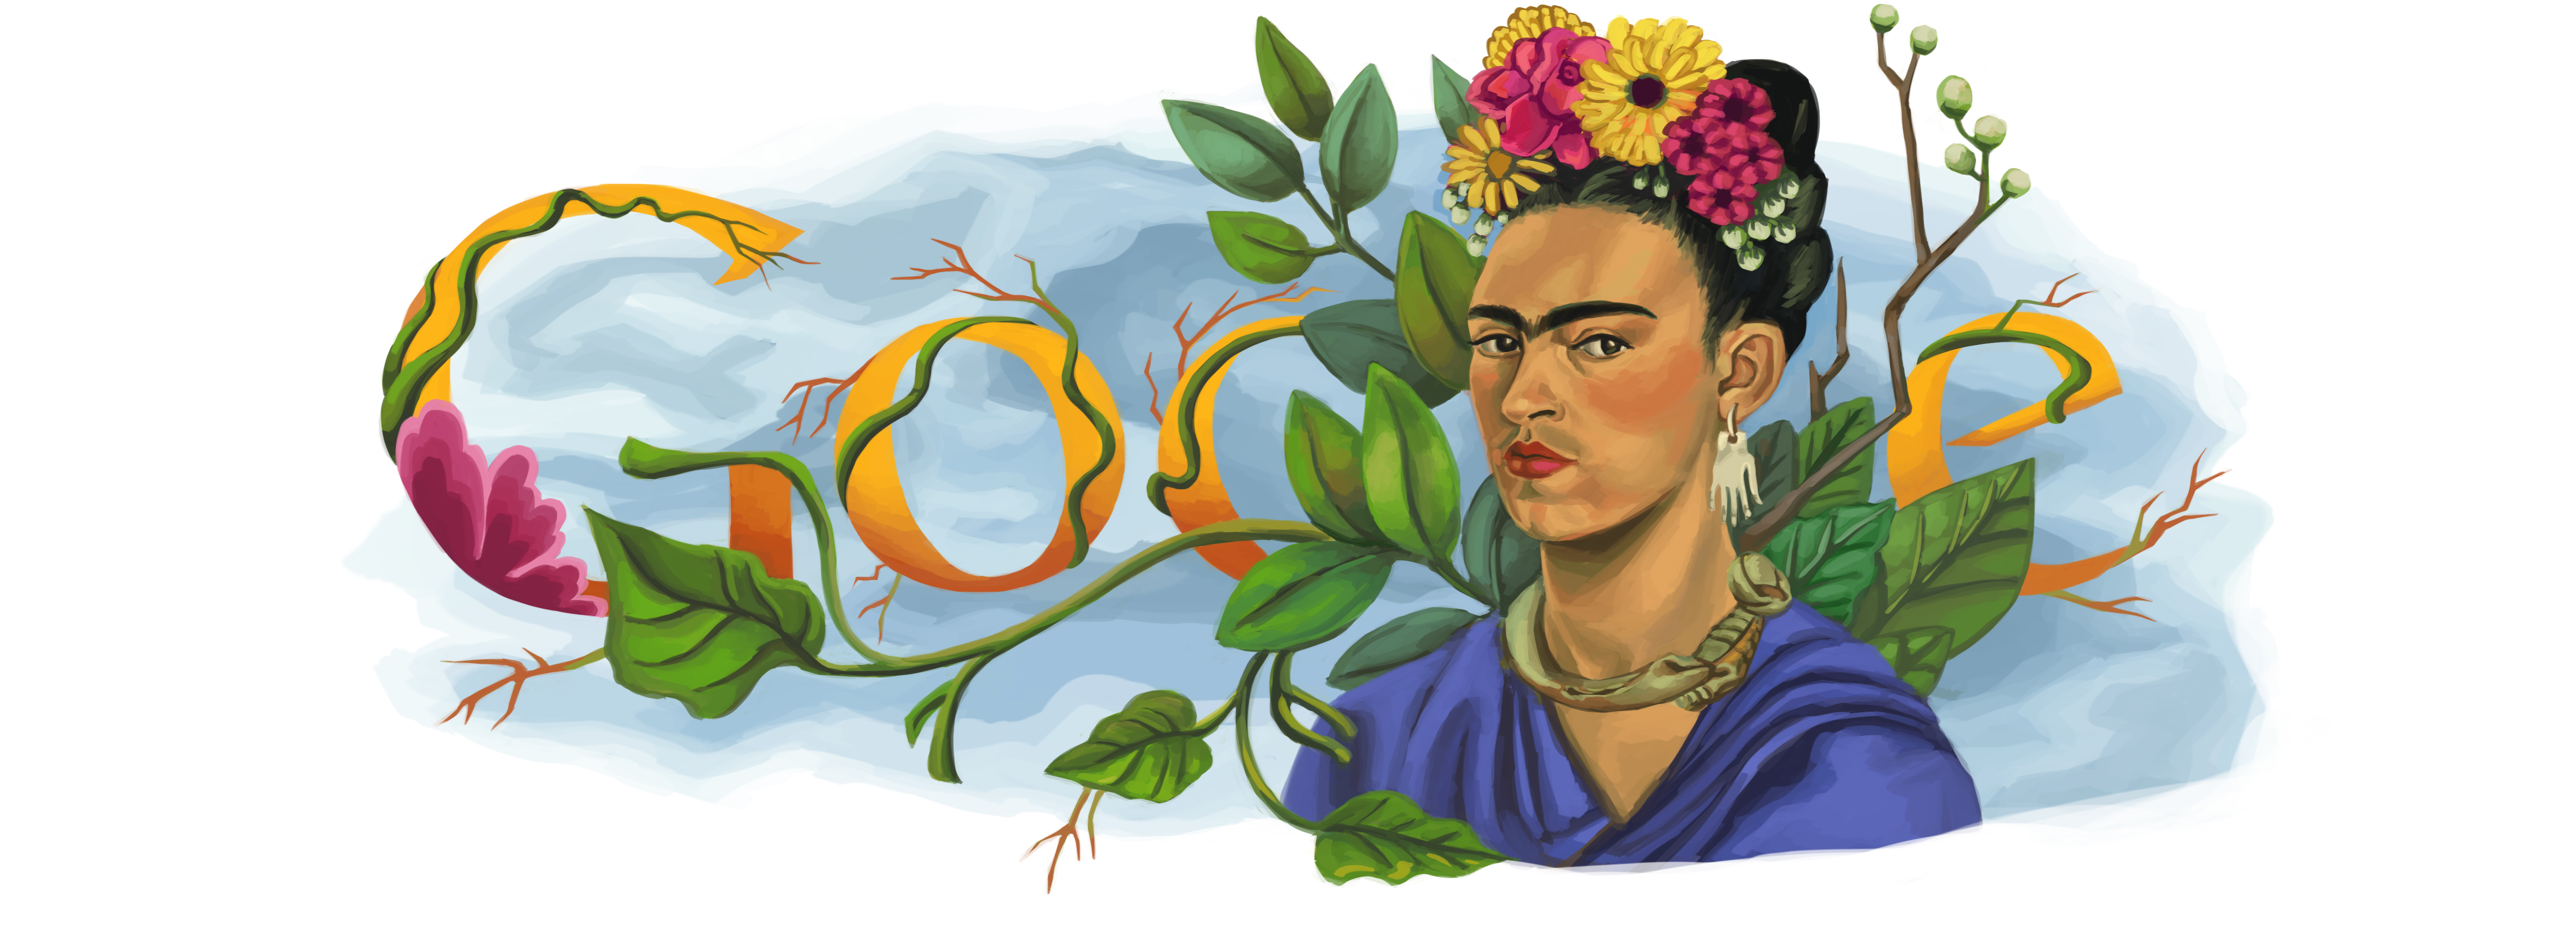 Frida Kahlo - Dia Internacional das Mulheres